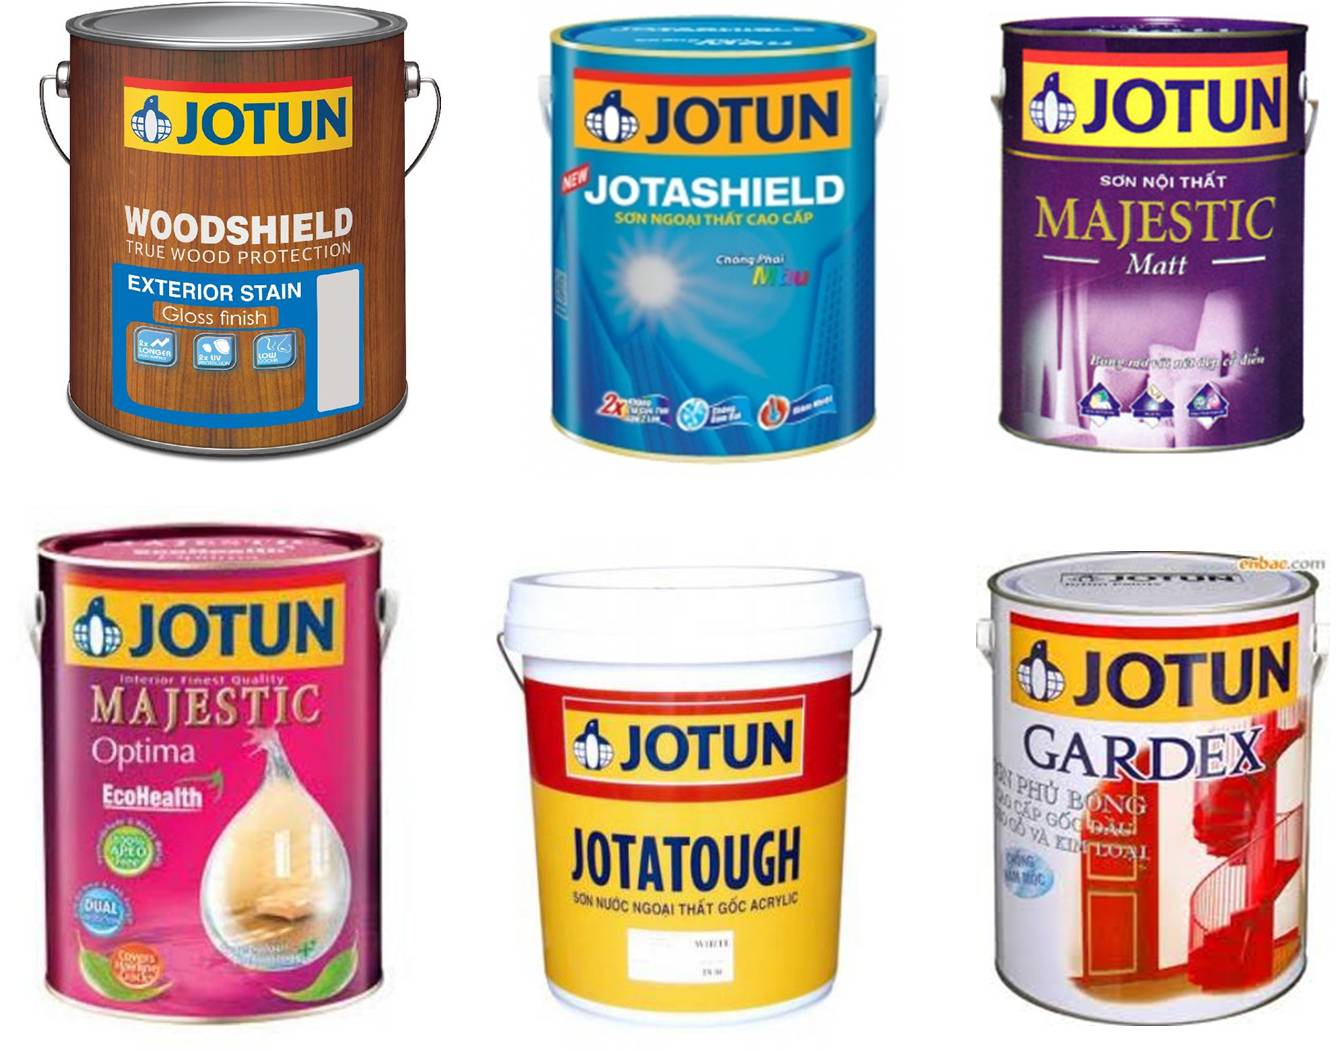 Nếu bạn muốn mua sơn chất lượng, hãy đến ngay với Jotun. Họ cam kết mang tới cho bạn sự hoàn hảo nhất về màu sắc và độ bền lâu dài. Chắc chắn bạn sẽ hài lòng với sản phẩm của Jotun.